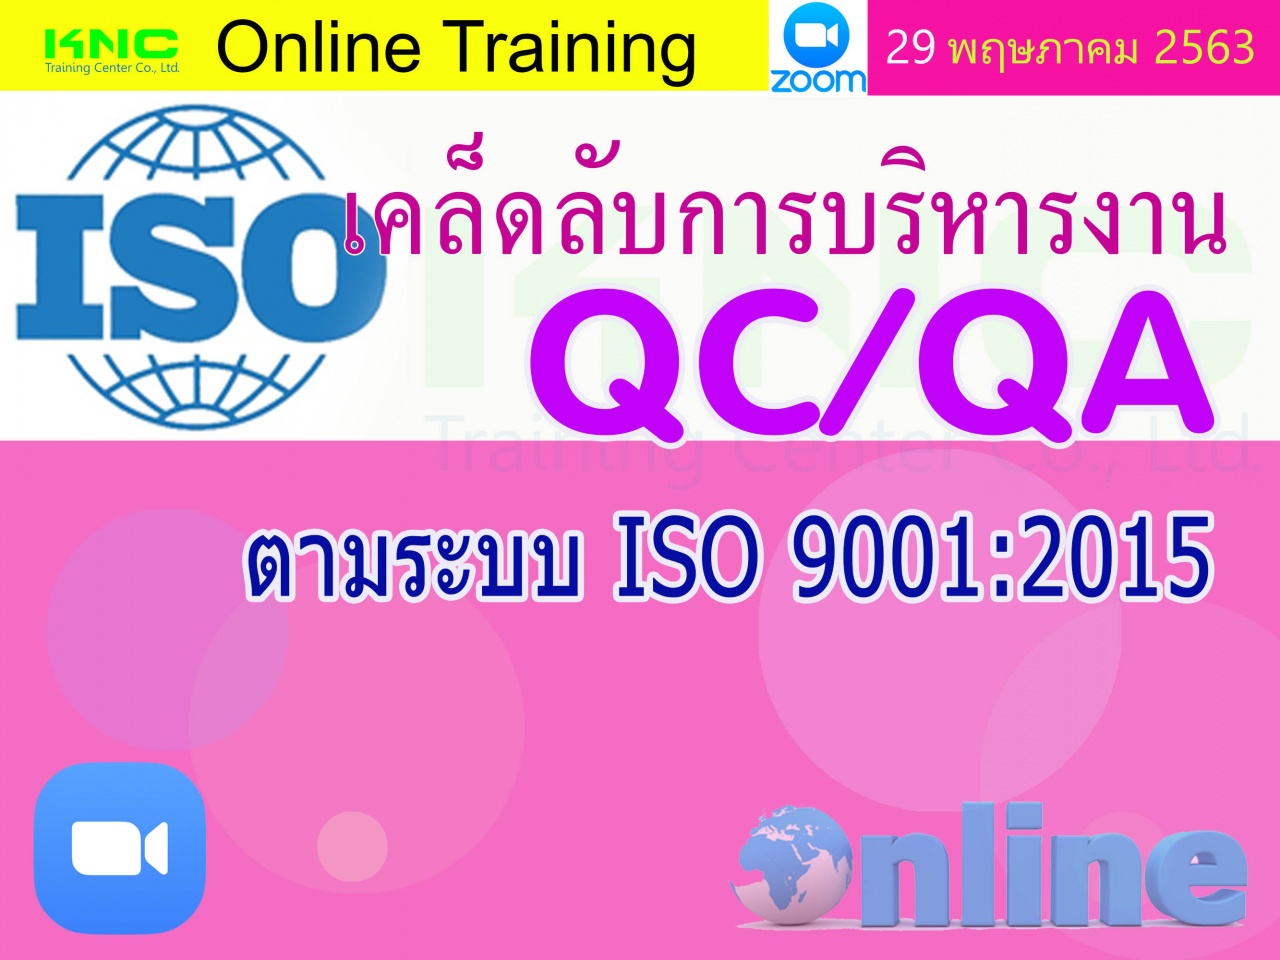 สัมมนาออนไลน์ : เคล็ดลับการบริหารงาน QC/QA ตามระบบ ISO 9001:2015